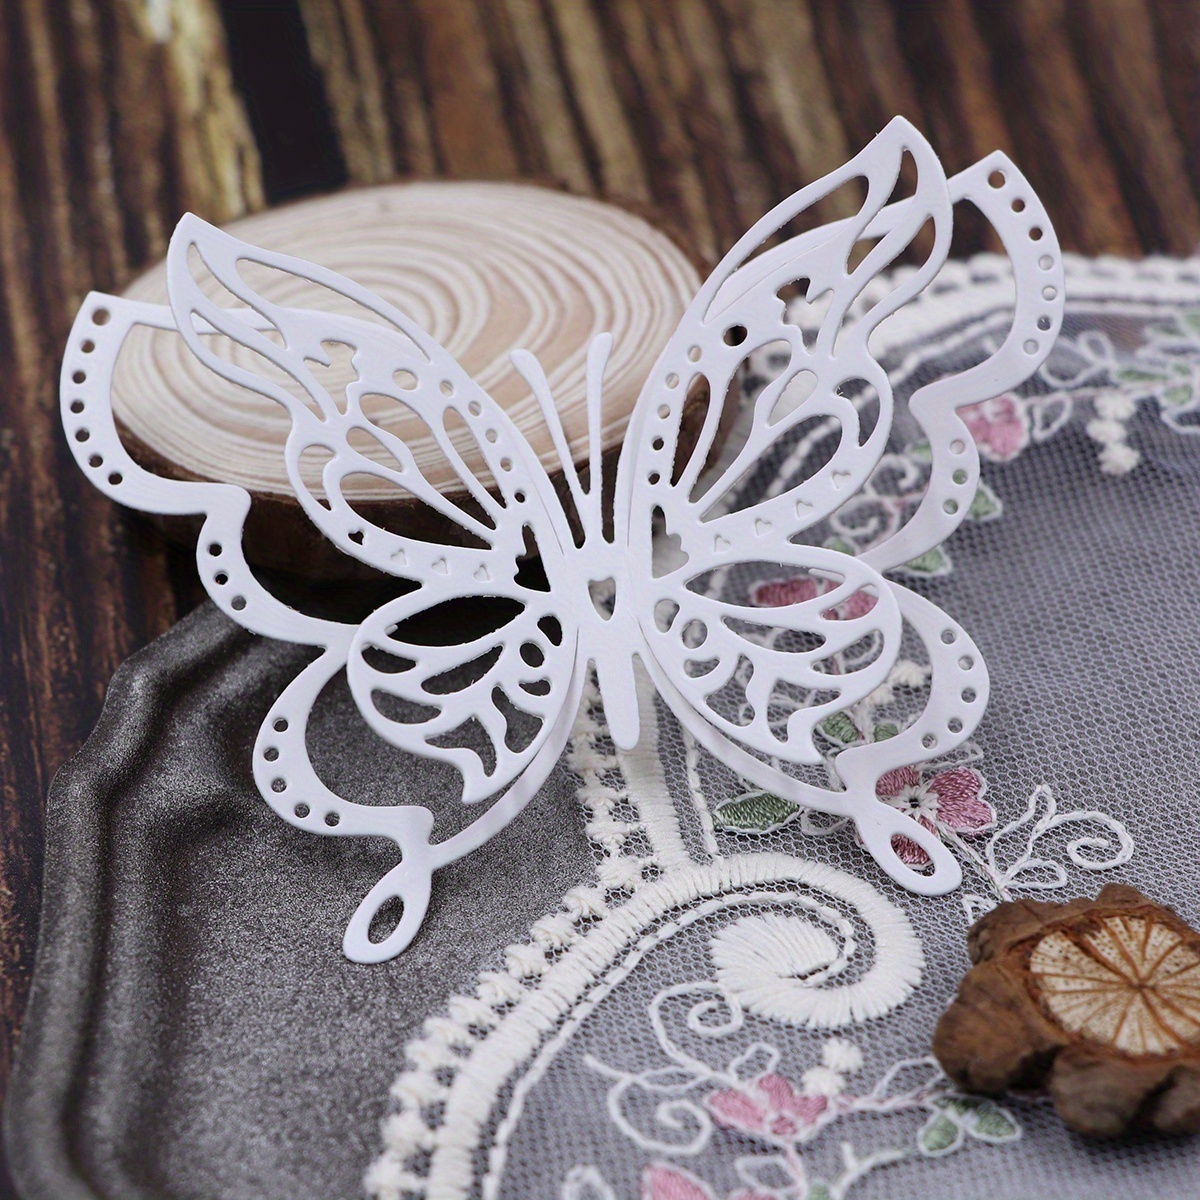 Die Cuts for Card Making, Ouginx Animal Butterfly Flower Metal Cutting Dies  DIY Die Cutters Die Stencils for Scrapbooking, Embossing & More 